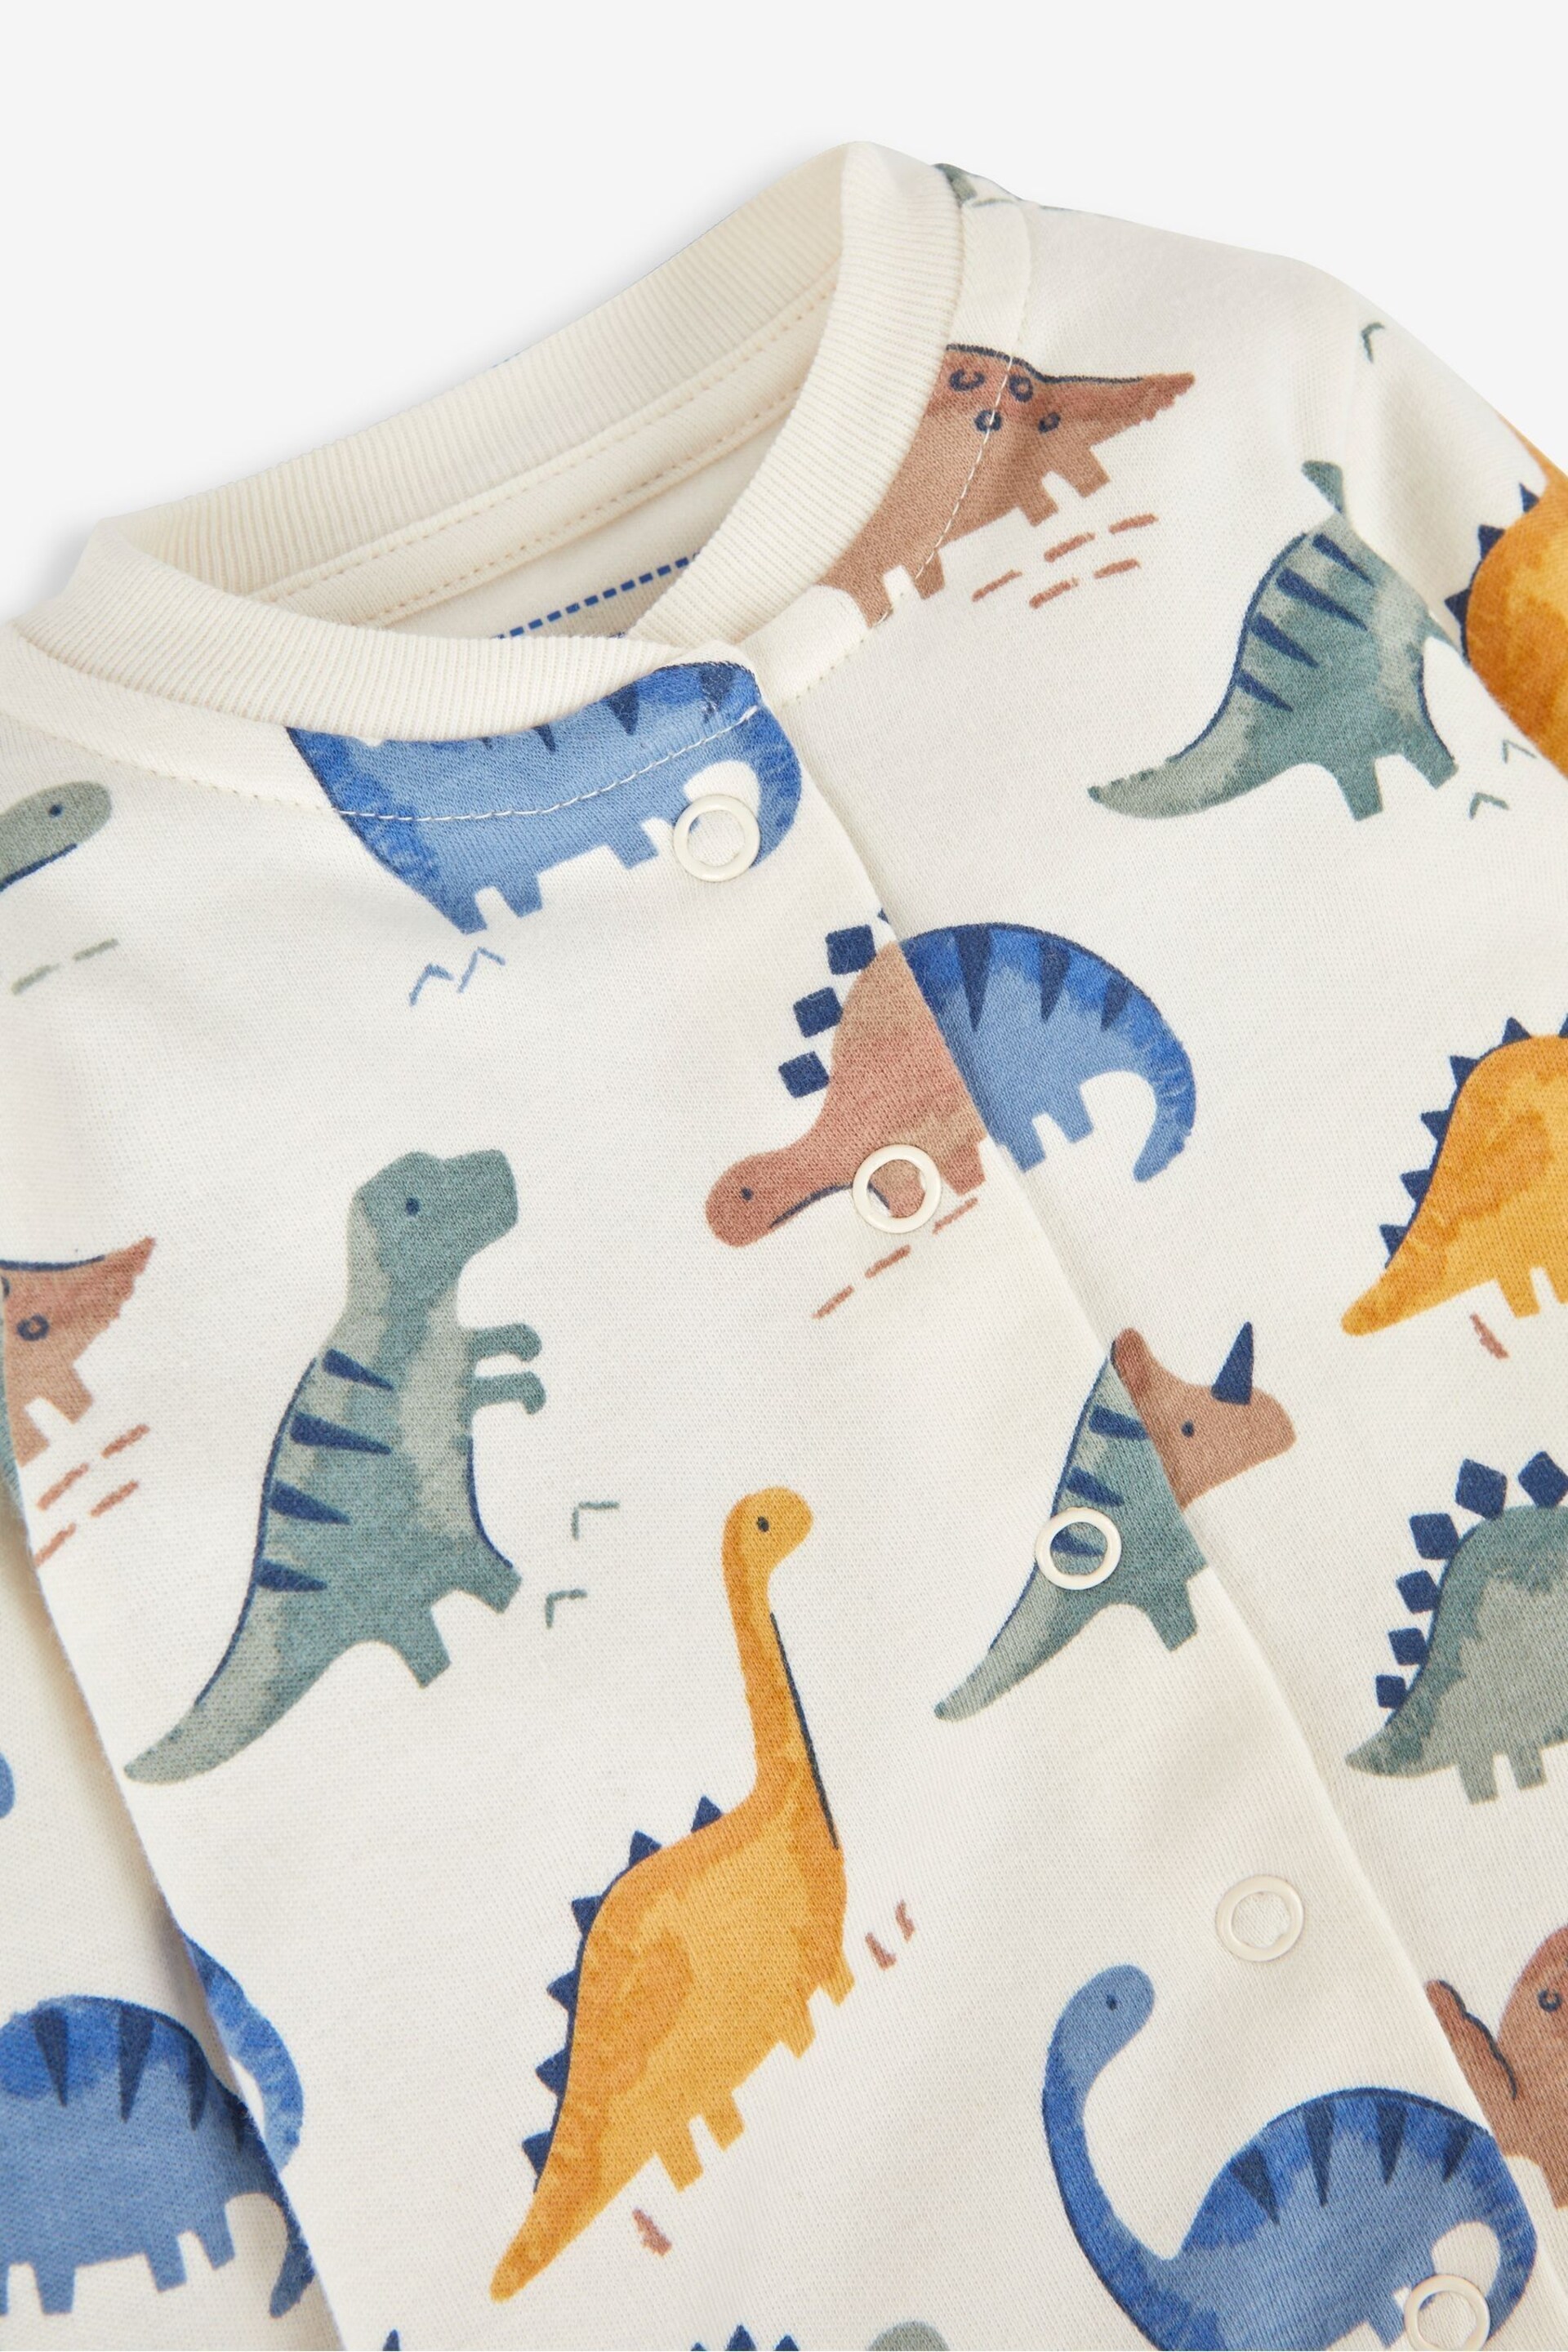 JoJo Maman Bébé Cream Dinosaur Print Cotton Baby Sleepsuit - Image 3 of 4